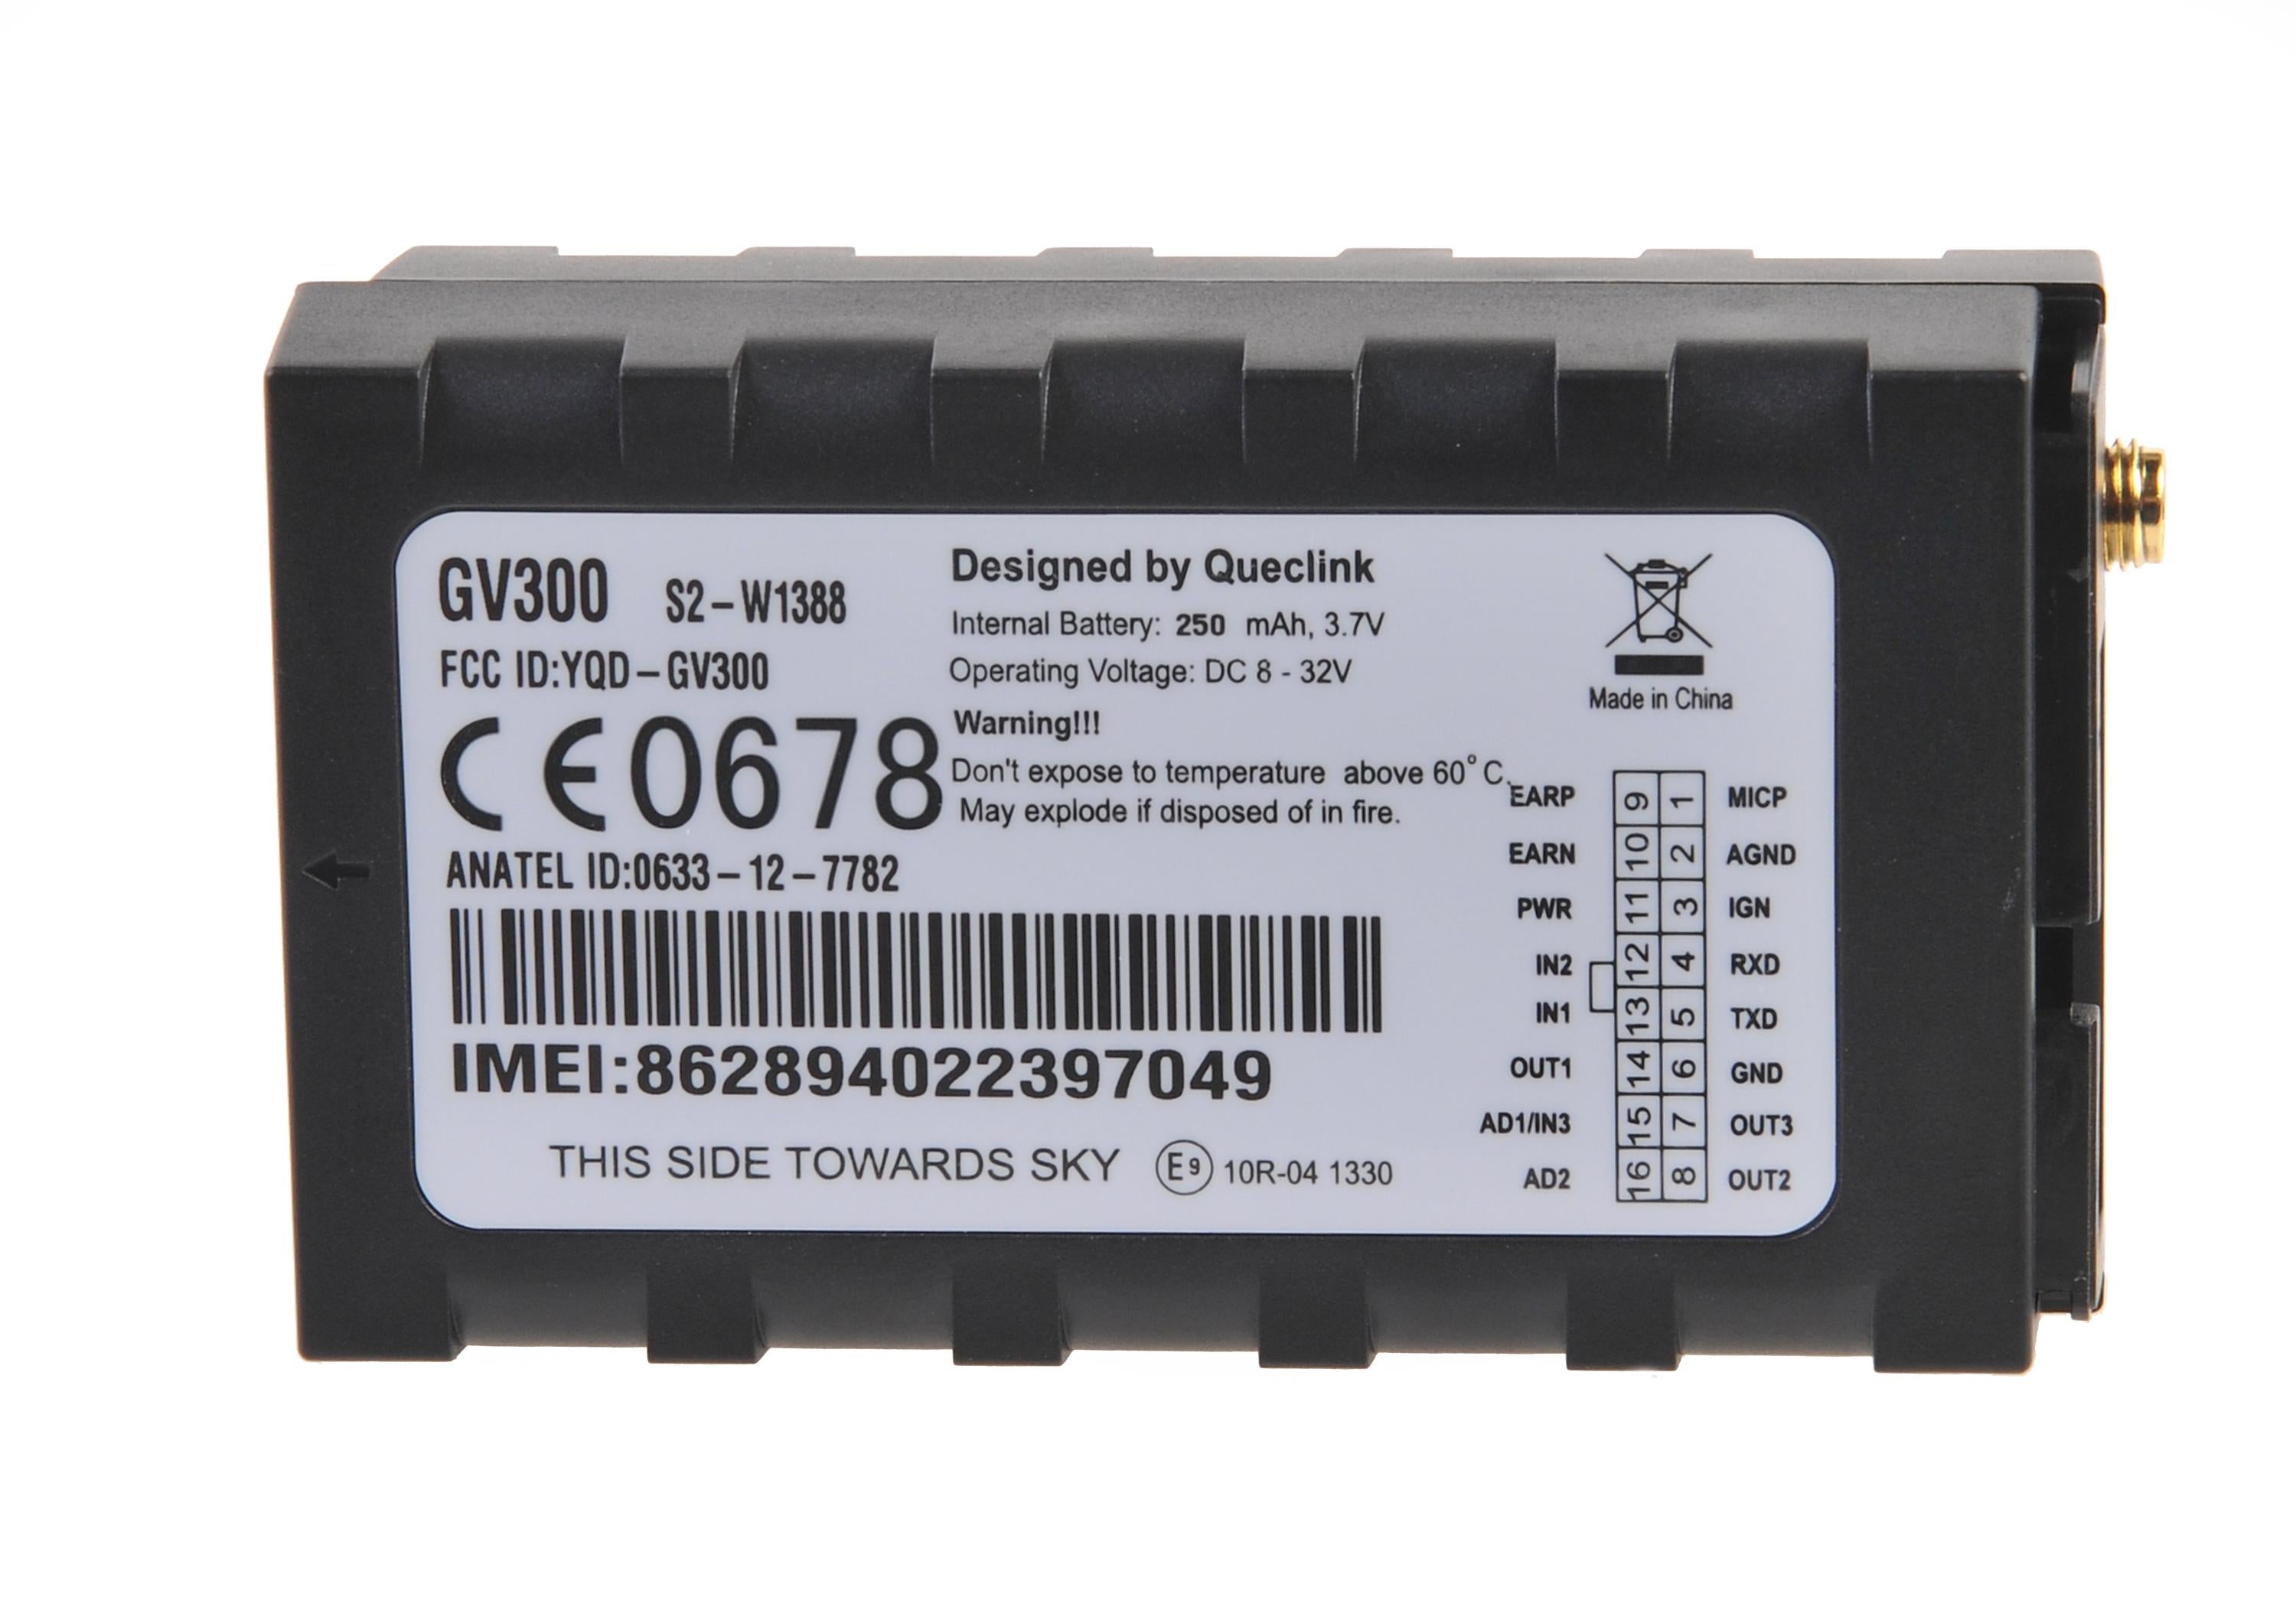 Queclink GV300 GSM/GPS Asset Tracker Back